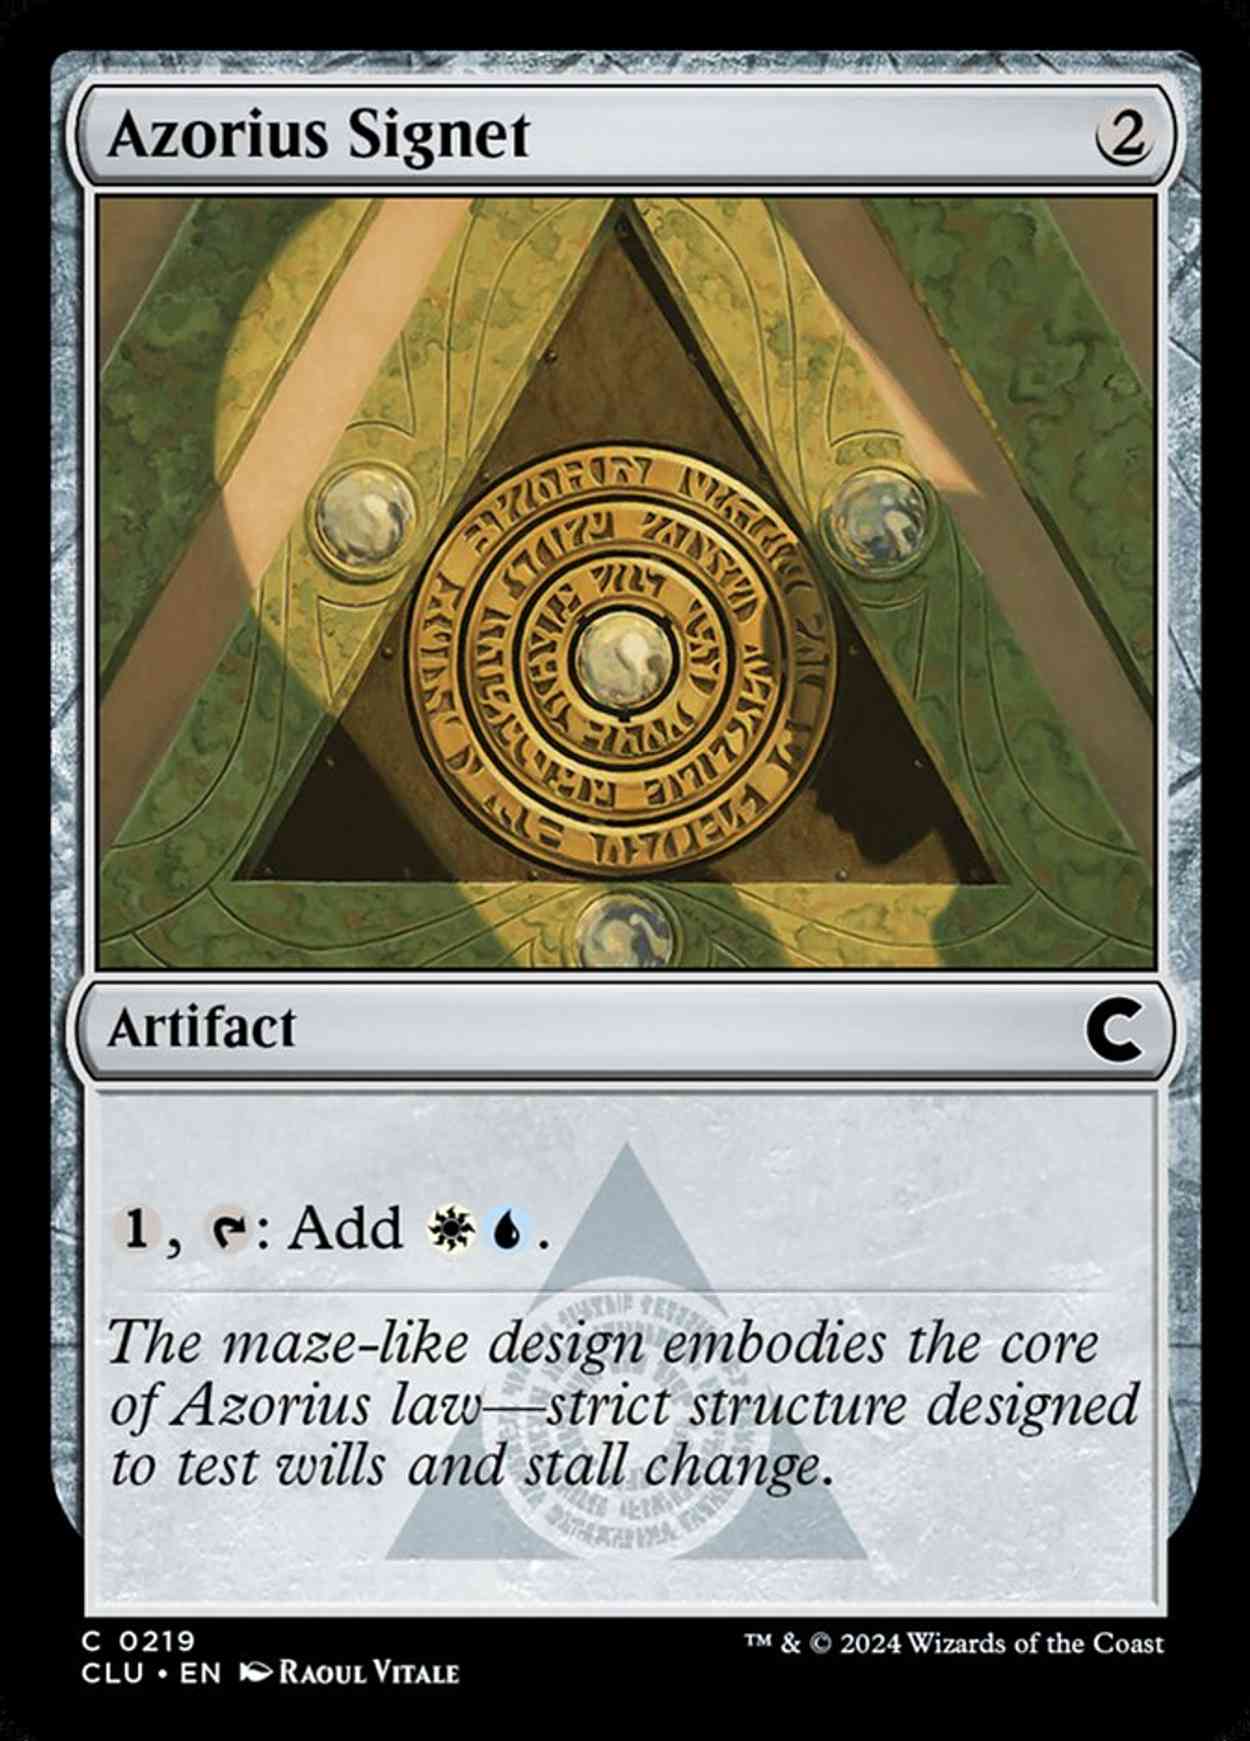 Azorius Signet magic card front